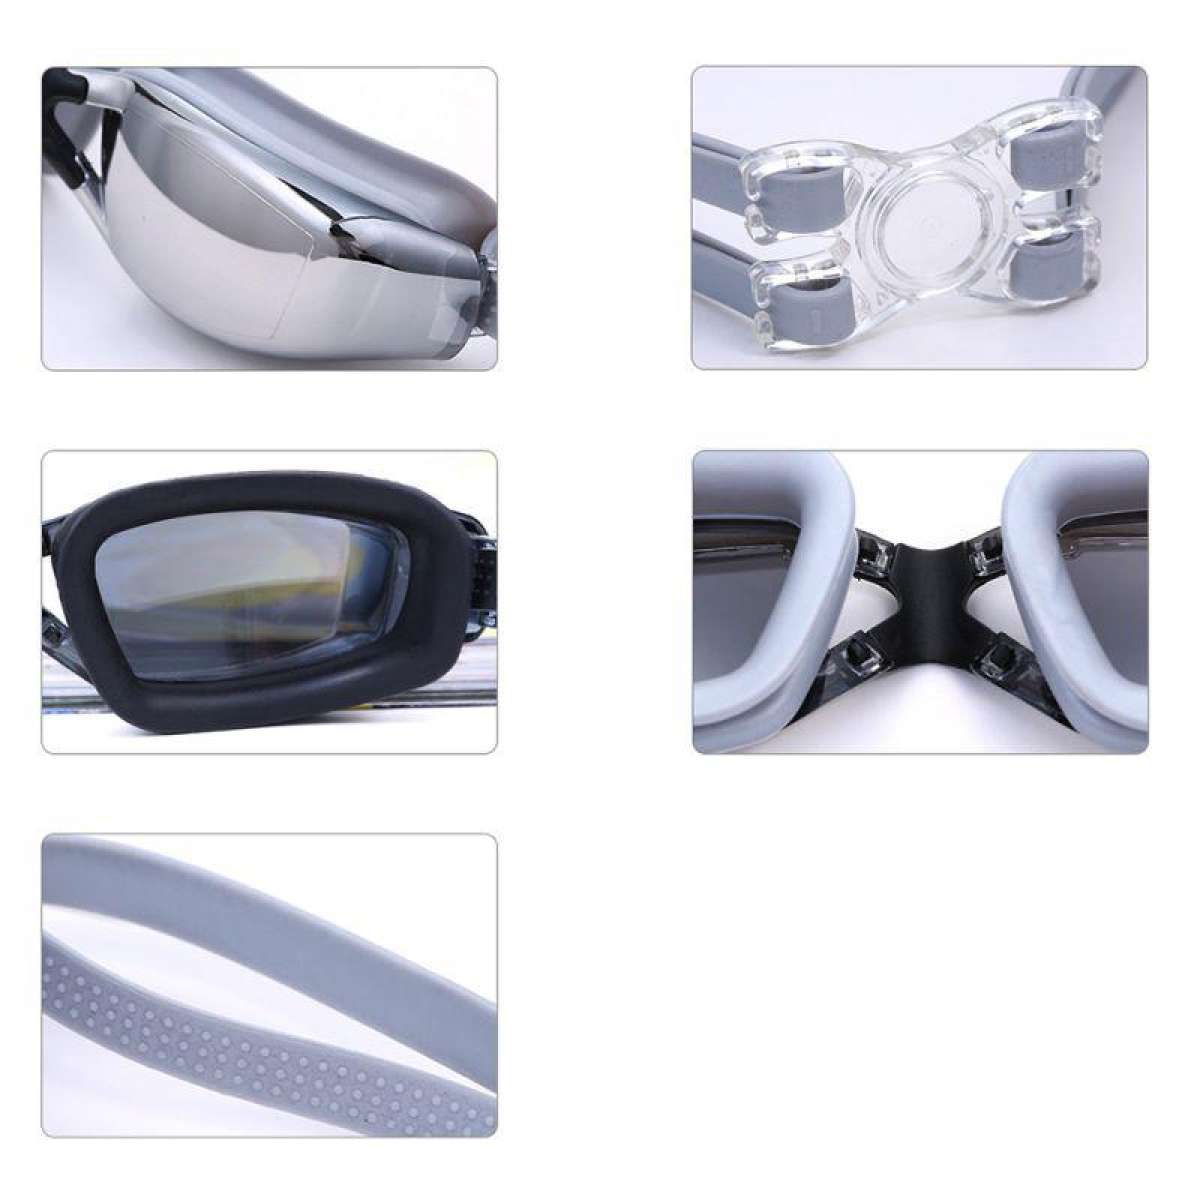 ภาพที่ให้รายละเอียดเกี่ยวกับ แว่นตาว่ายน้ำ แว่นตาสำหรับว่ายน้ำ แว่นว่ายน้ำ ถนอมสายตา ป้องกันแสงแดด UV Swimming glasses / Goggle มี 9 สีให้เลือก